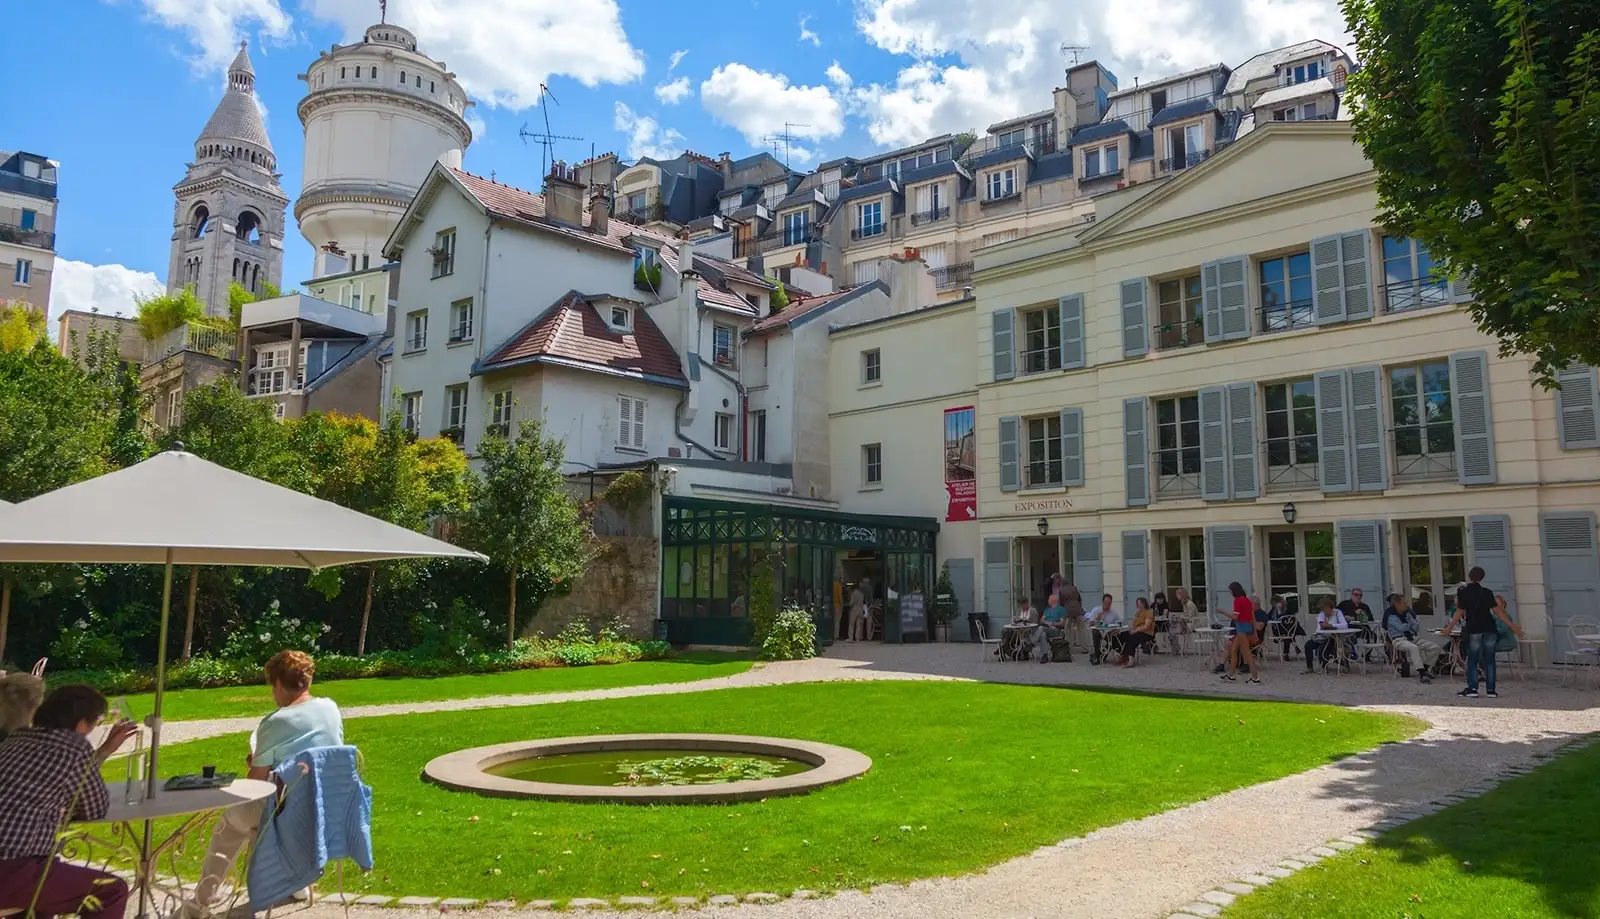 Bảo tàng Montmartre từng là nơi ở và làm việc của nhiều họa sĩ nổi tiếng